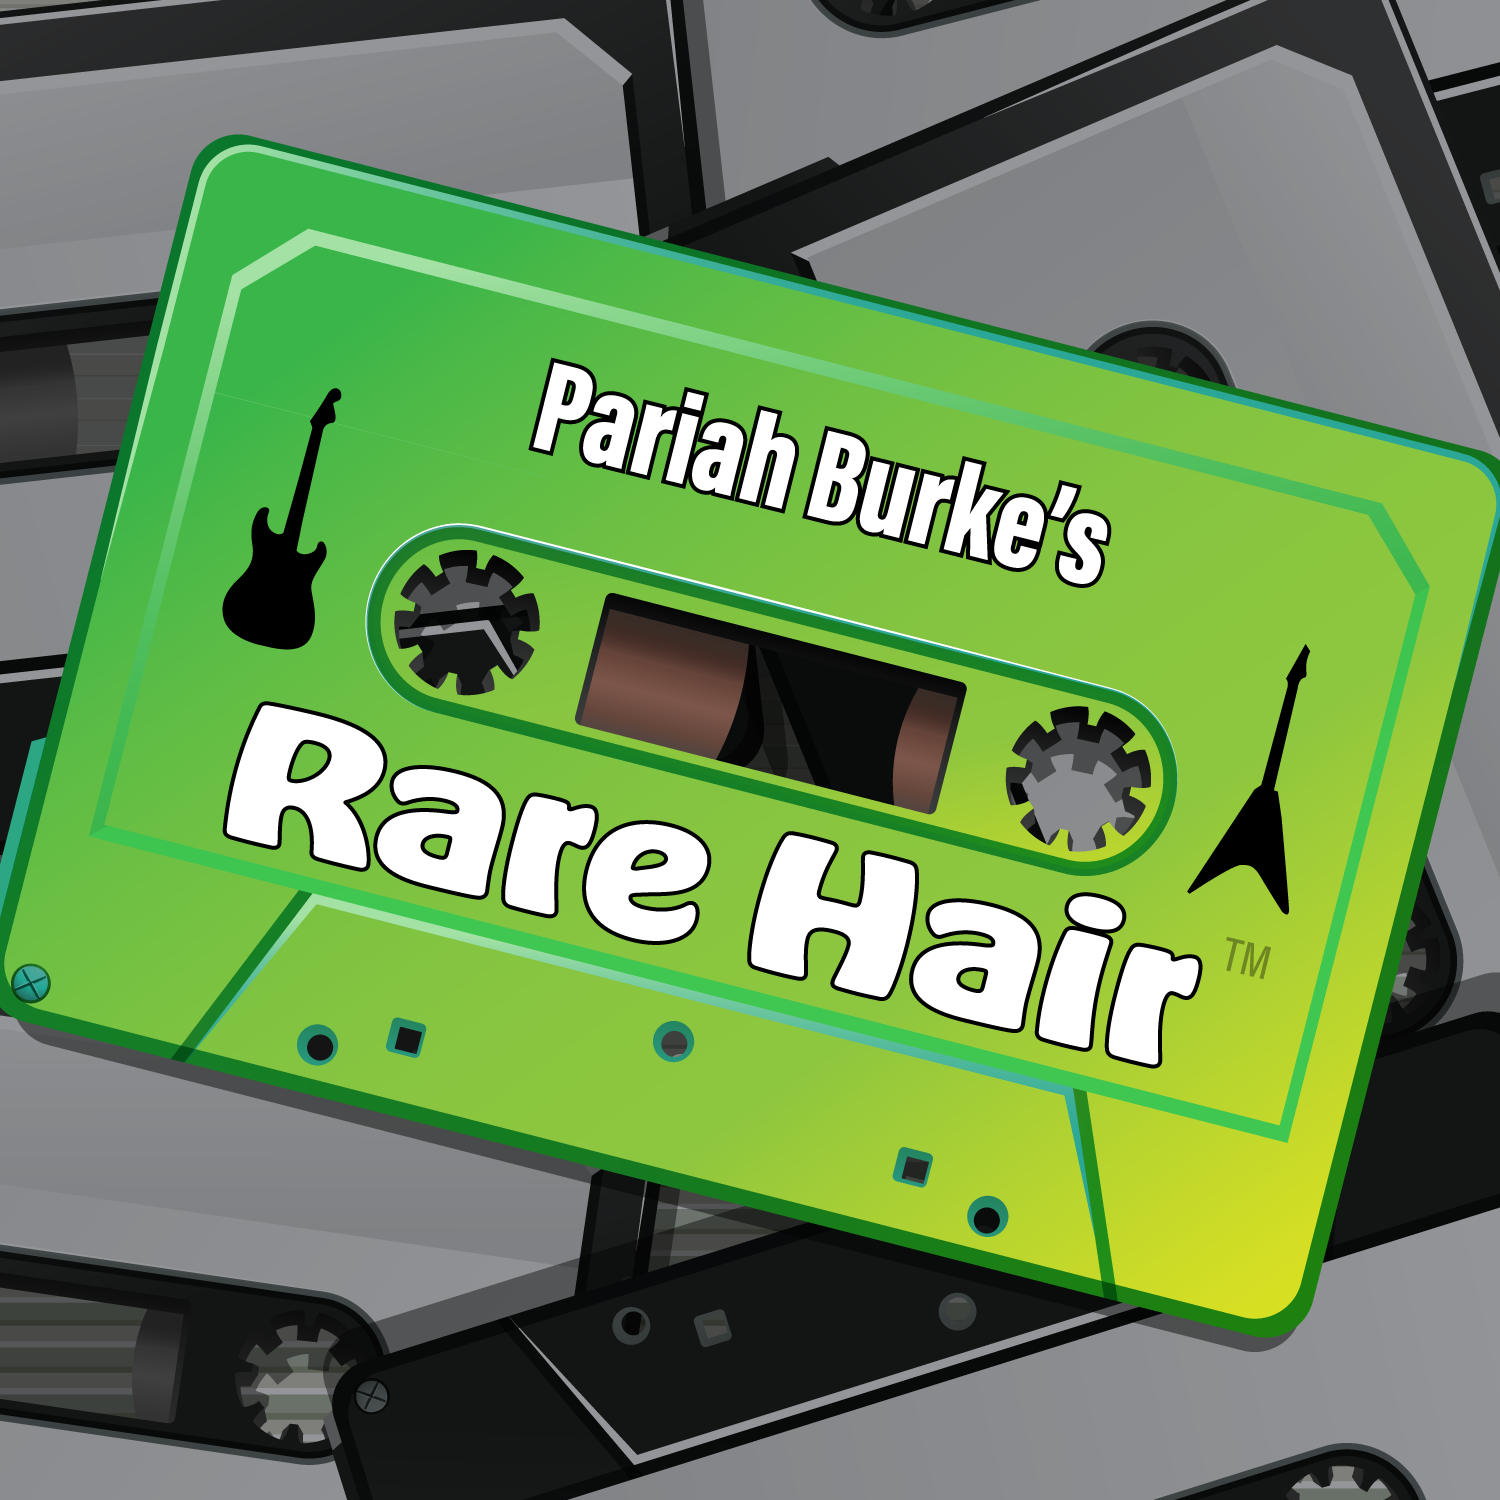 Rare Hair